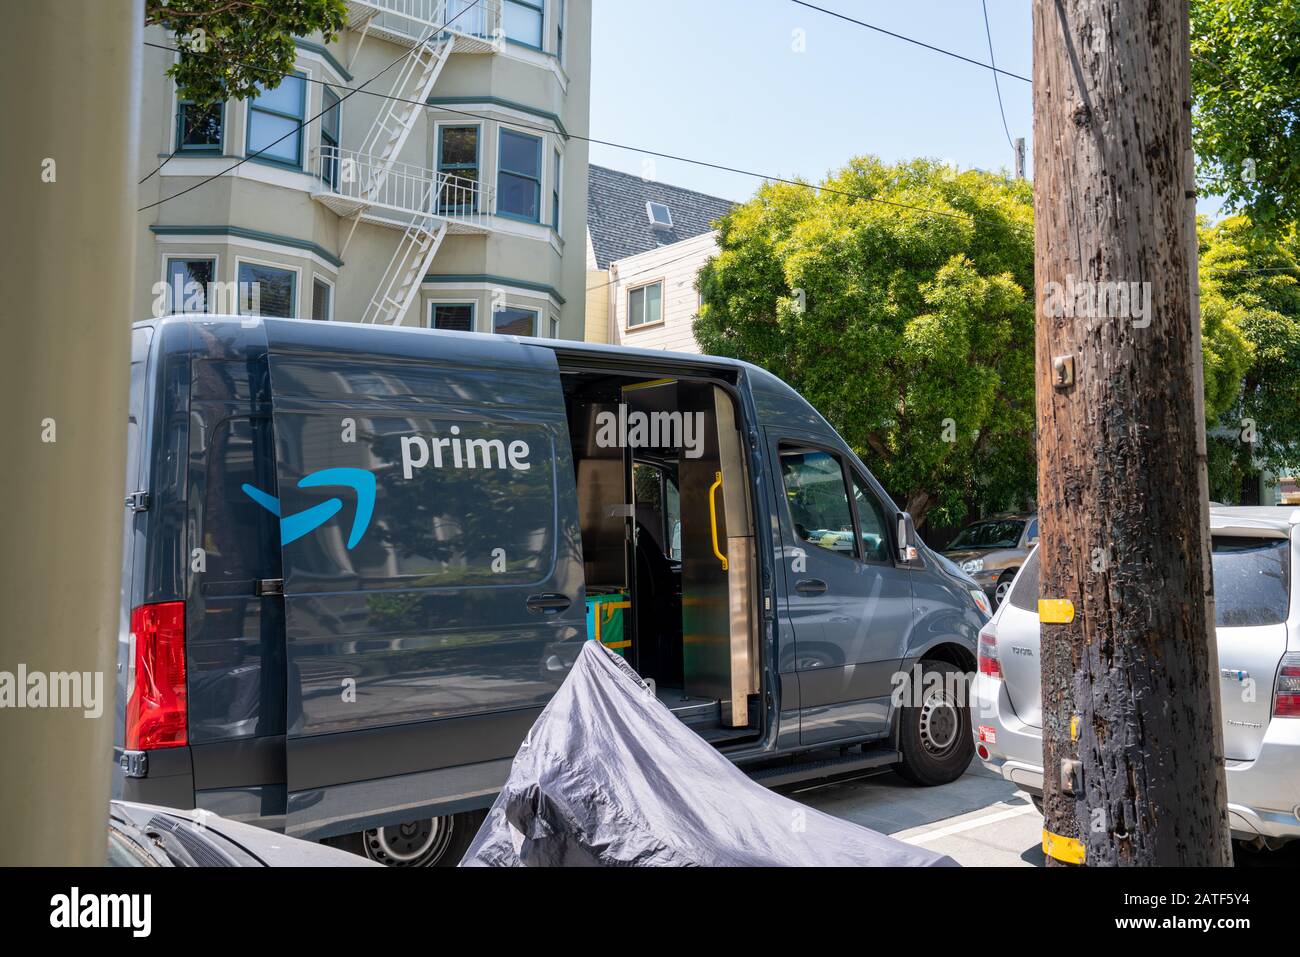 Amazon prime delivery truck parked in neighborhood with driver going door to door Stock Photo